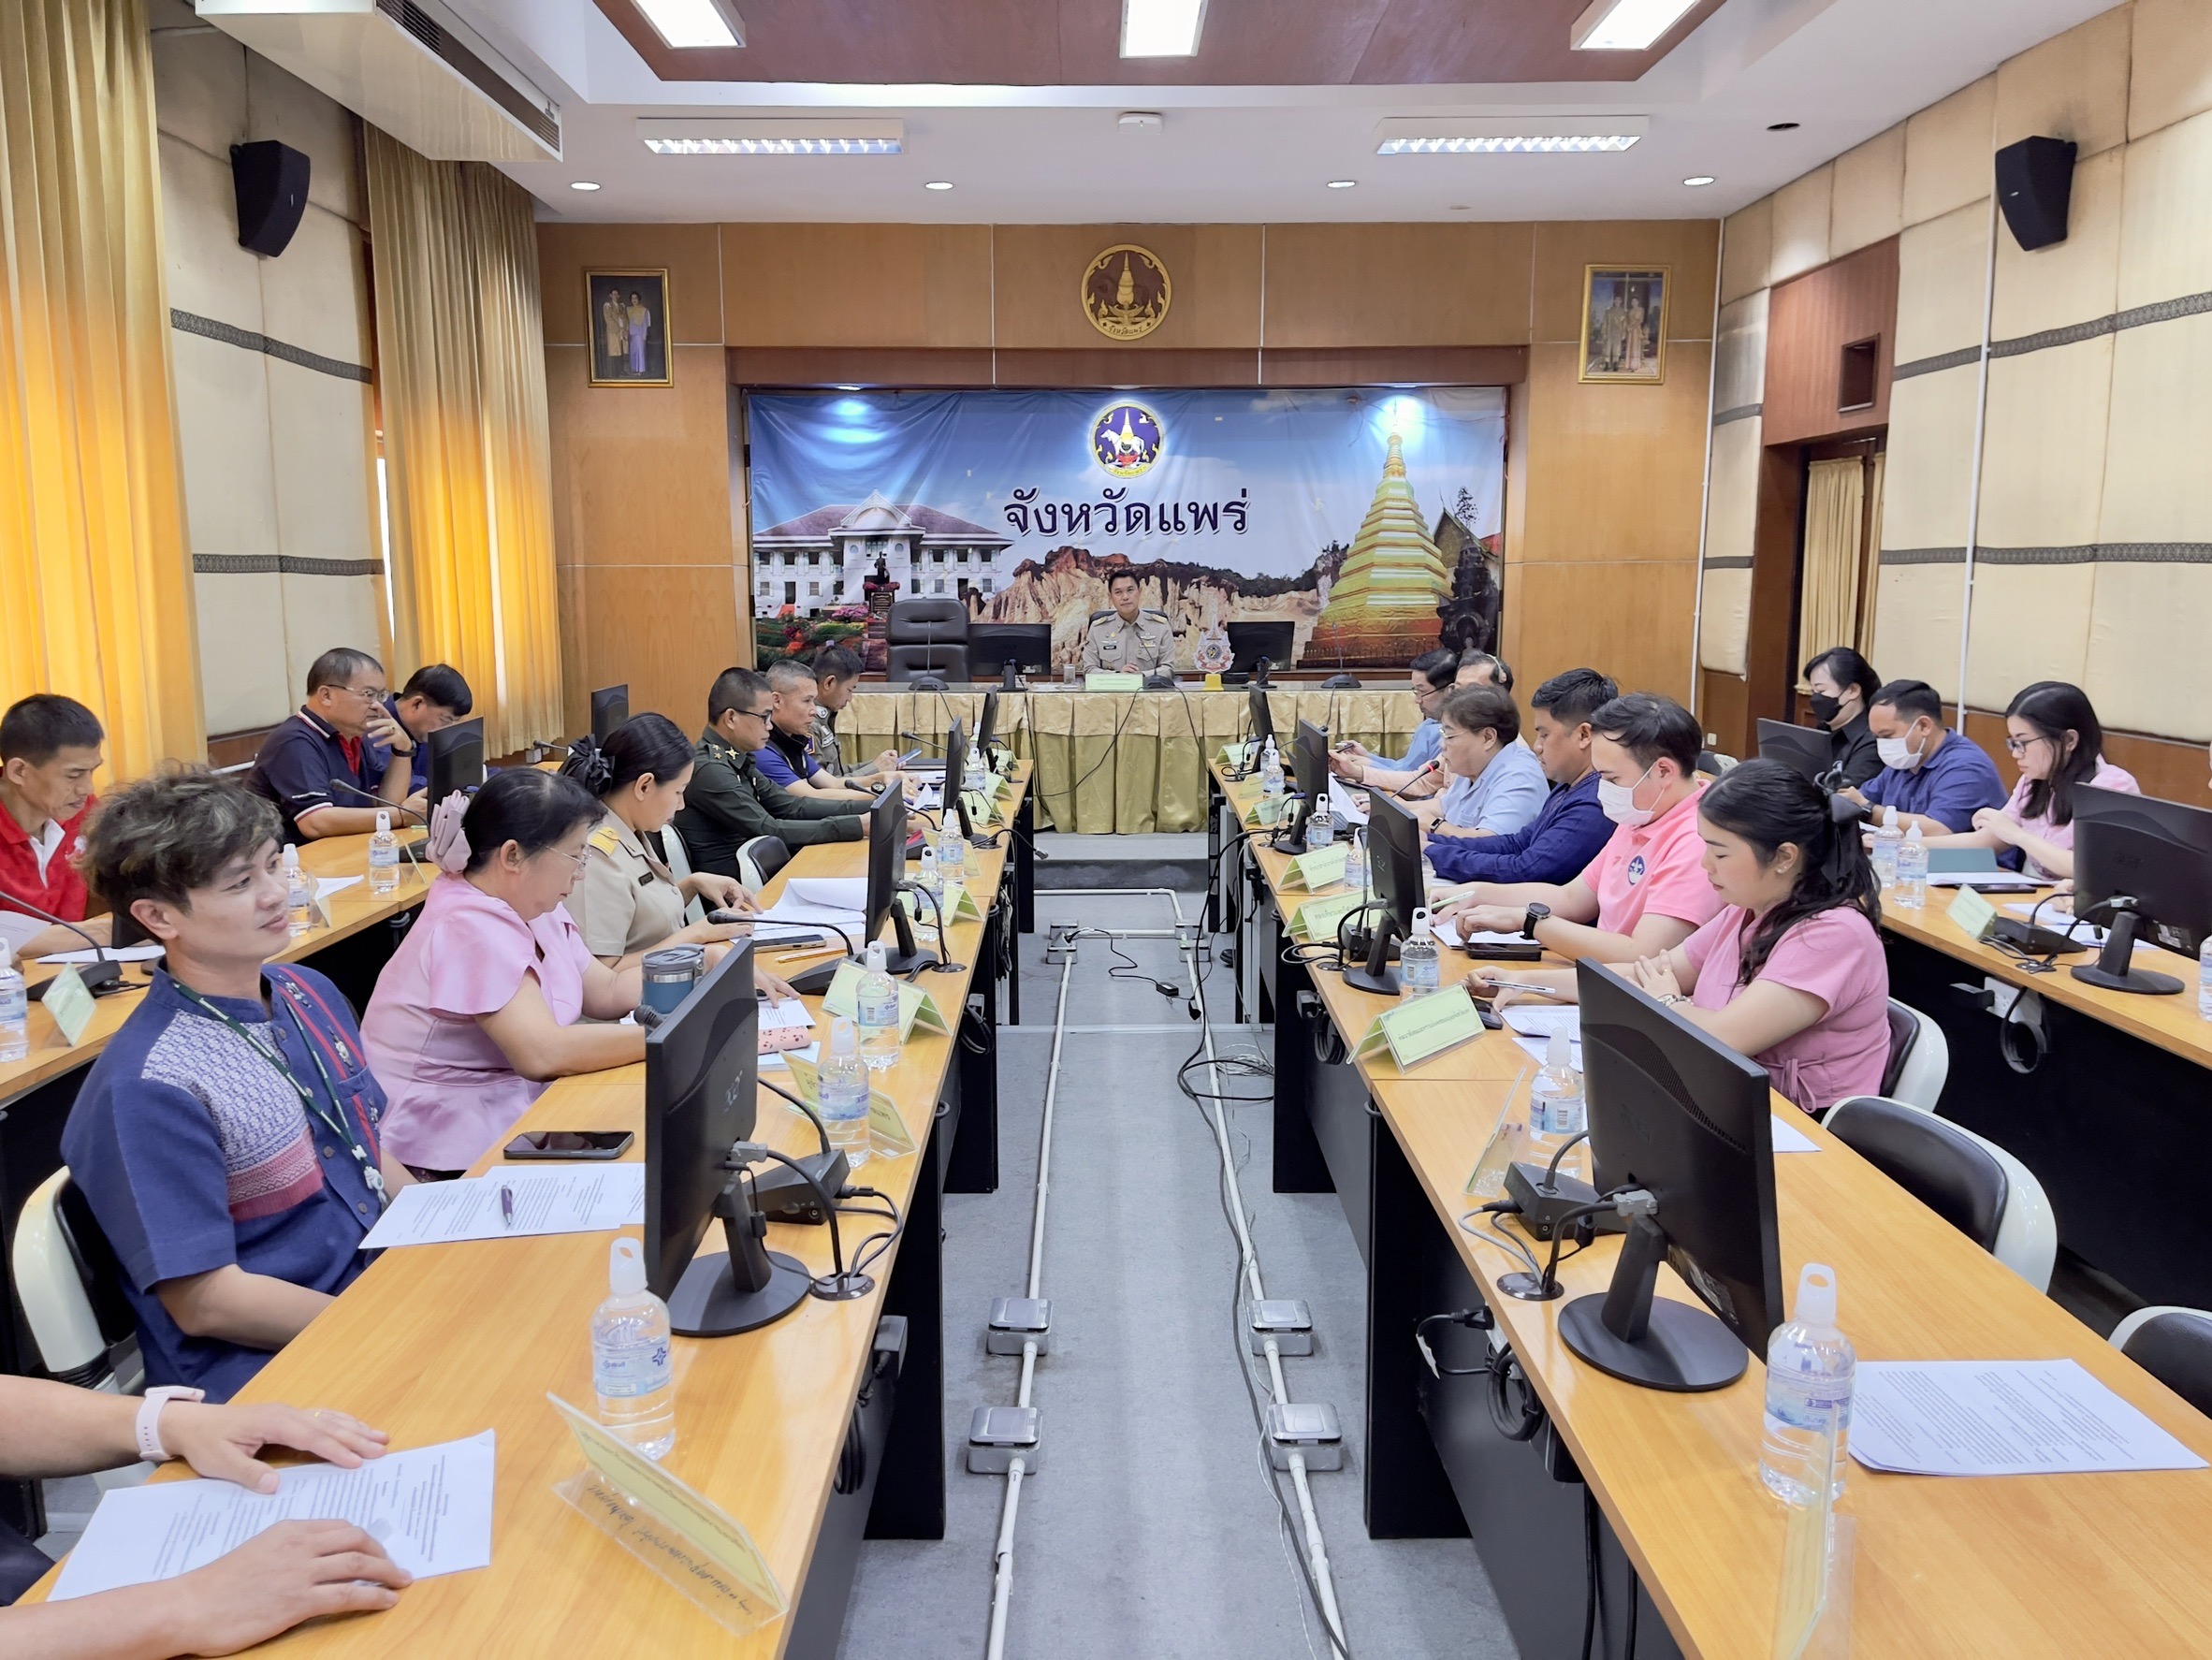 จังหวัดแพร่ประชุมขับเคลื่อน โครงการแสงนำใจไทยทั้งชาติ เดิน วิ่ง ปั่น ป้องกันอัมพาต ครั้งที่ 10 เฉลิมพระเกียรติฯ พร้อมเชิญชวนชาวแพร่ร่วมกิจกรรมในวันเสาร์ที่ 2 พฤศจิกายน 2567